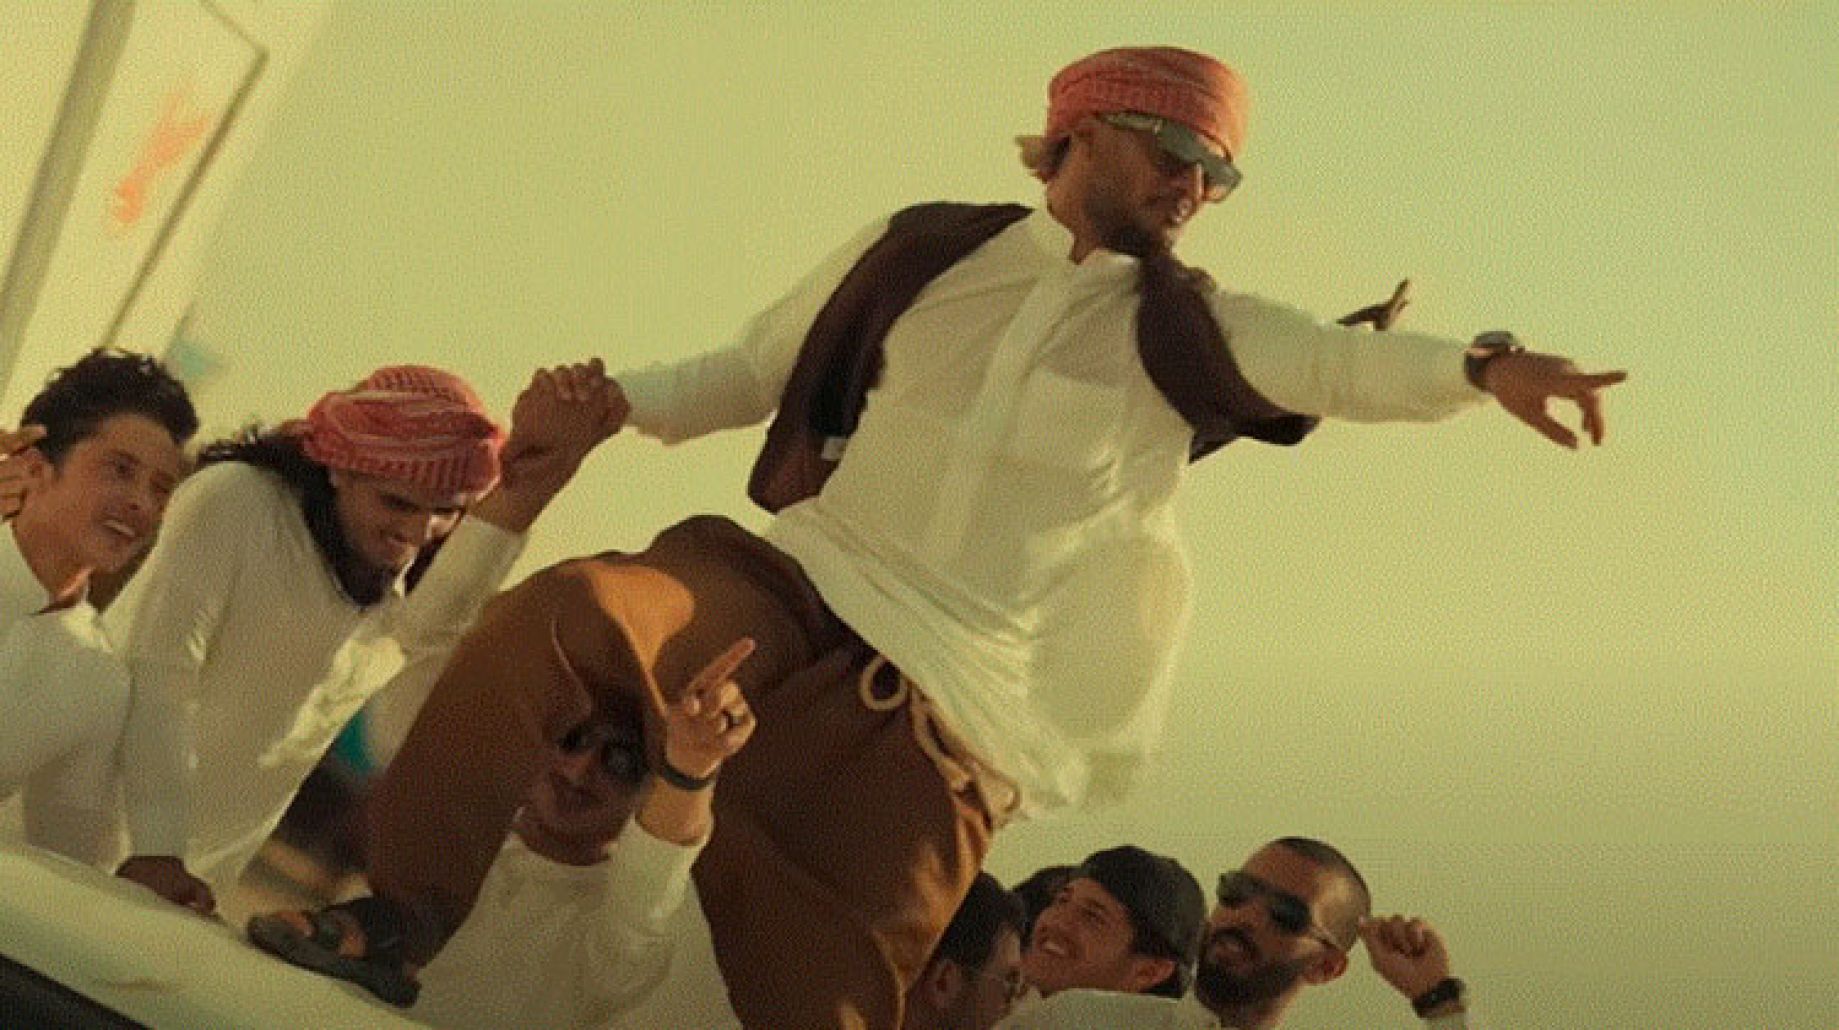 أطلق النجم الشهير محمد رمضان أحدث أغنياته "على الله" من خلال قناته على موقع يوتيوب، والتي ظهر خلال الكليب، بزي بدوي، وبيده مسدس، بالإضافة إلى قيادته عدة سيارات في الصحراء.